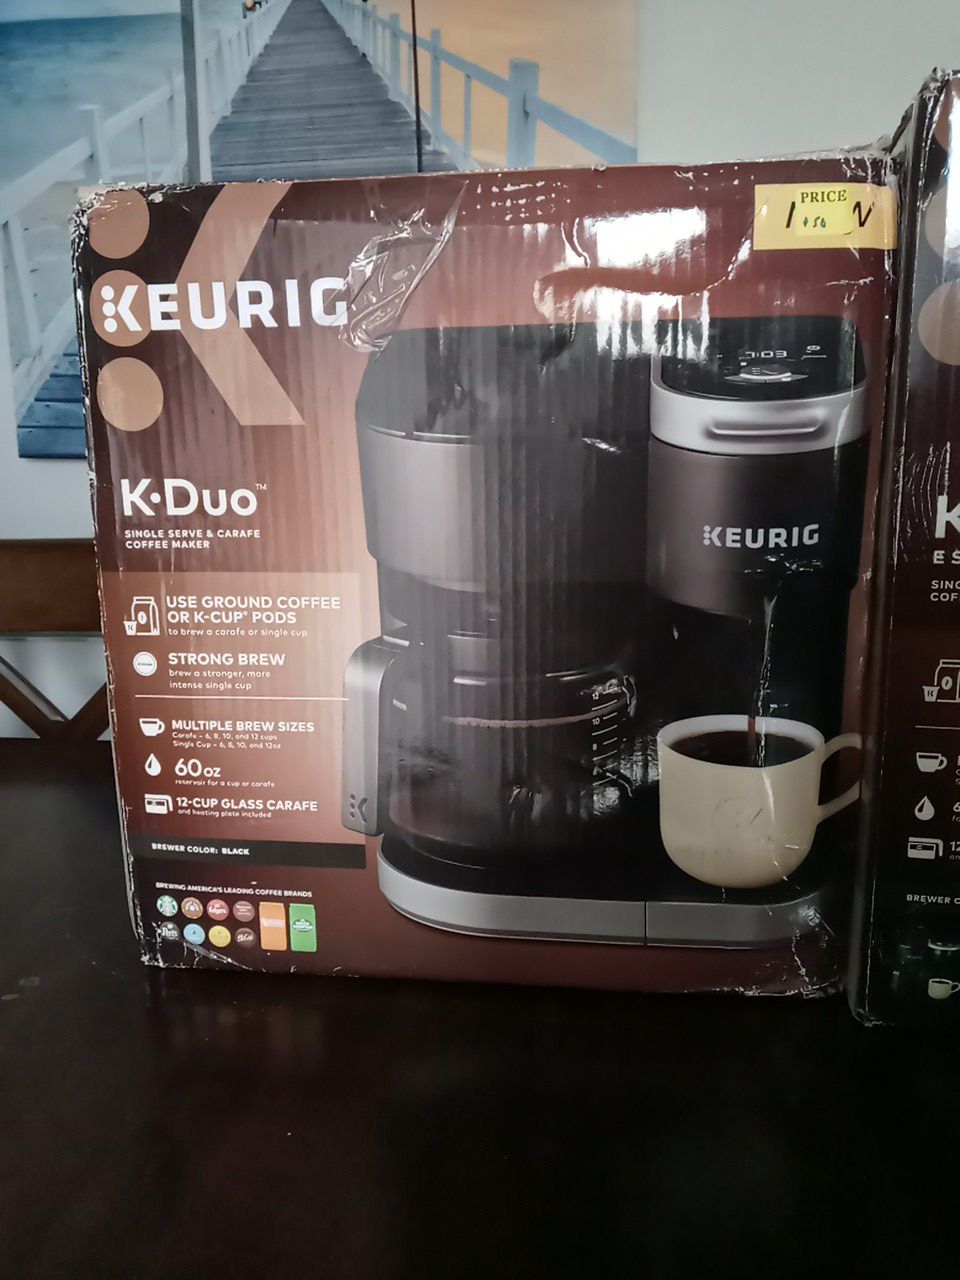 Keurig K Duo single serve coffee maker